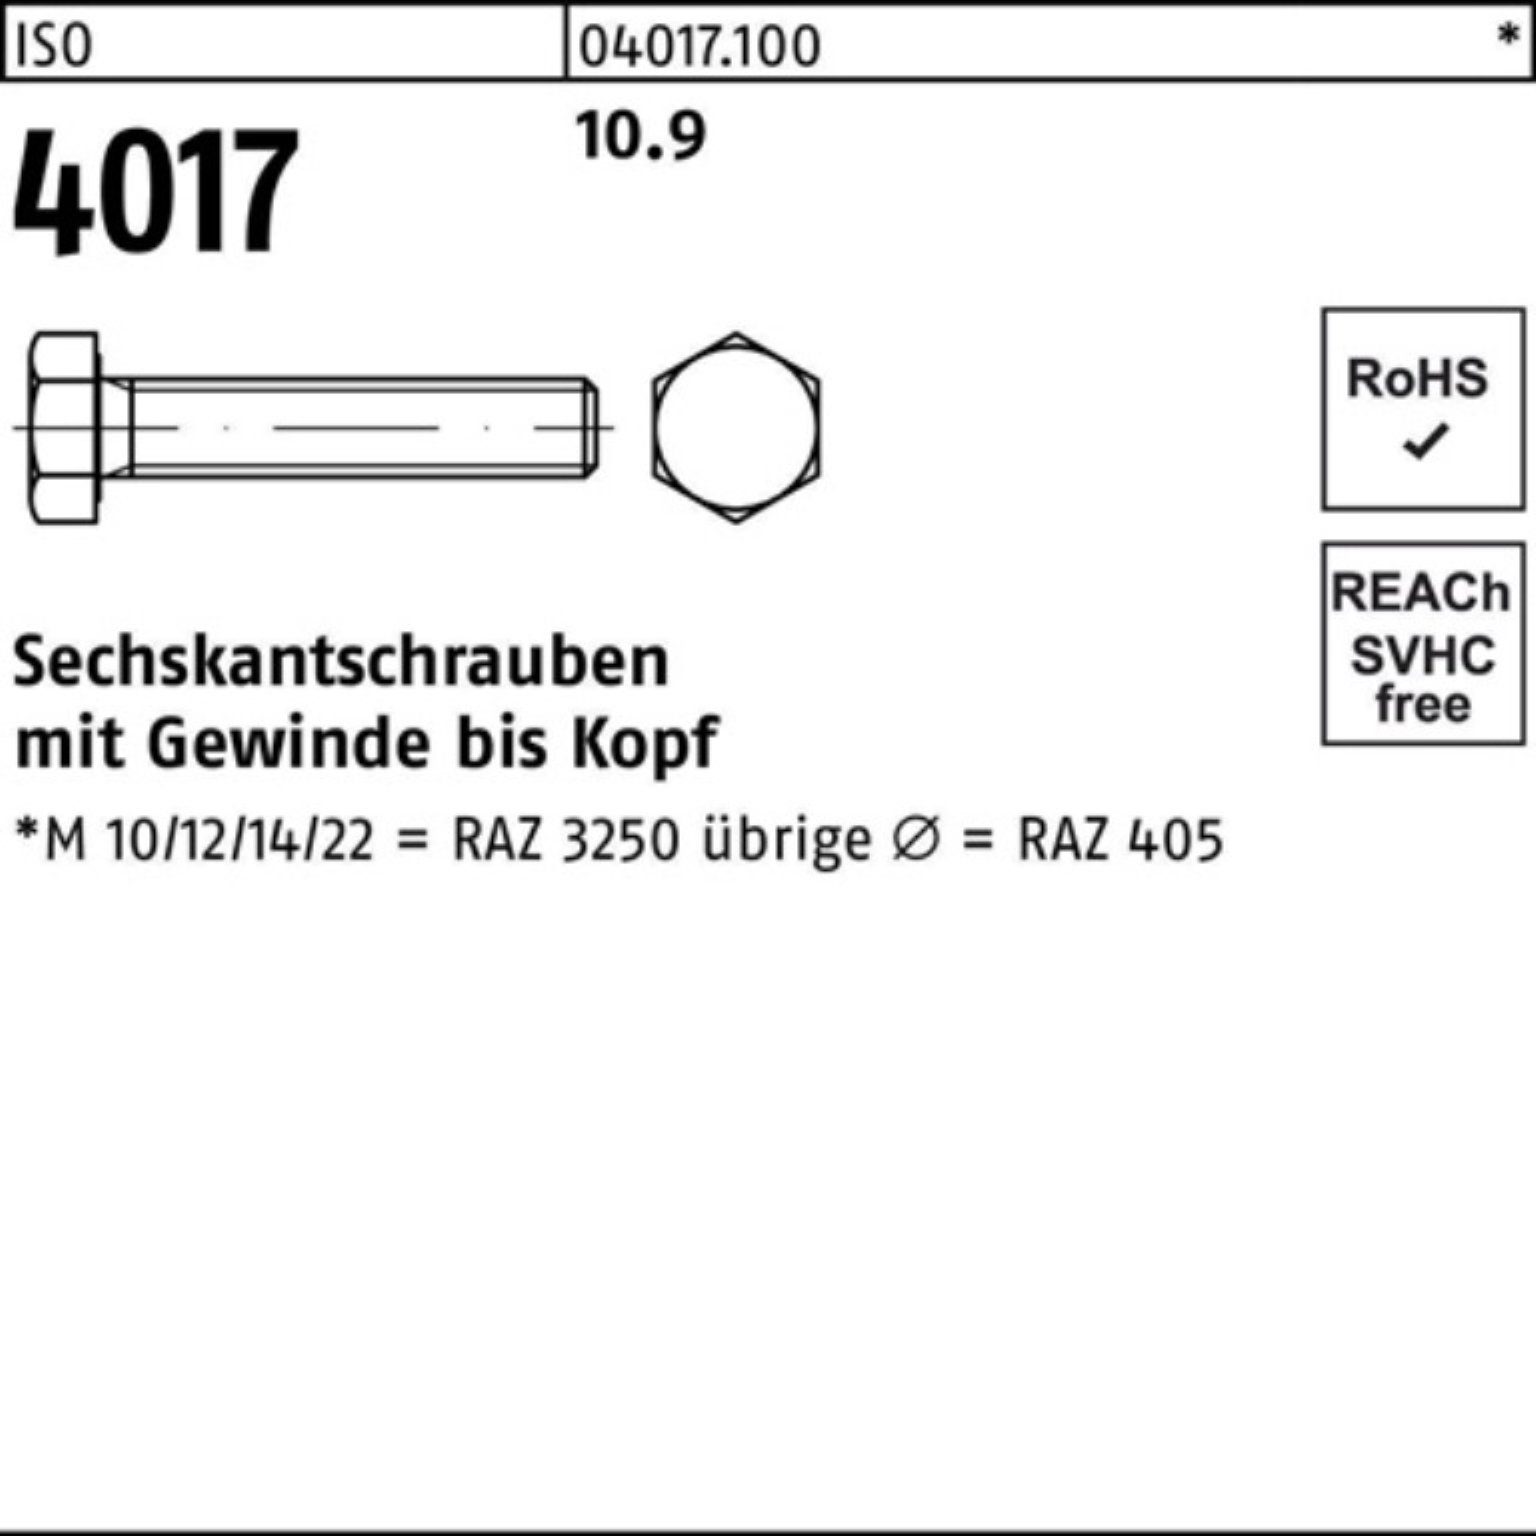 Bufab Sechskantschraube 4017 65 ISO Stück ISO 100er 25 40 Sechskantschraube M16x Pack VG 10.9